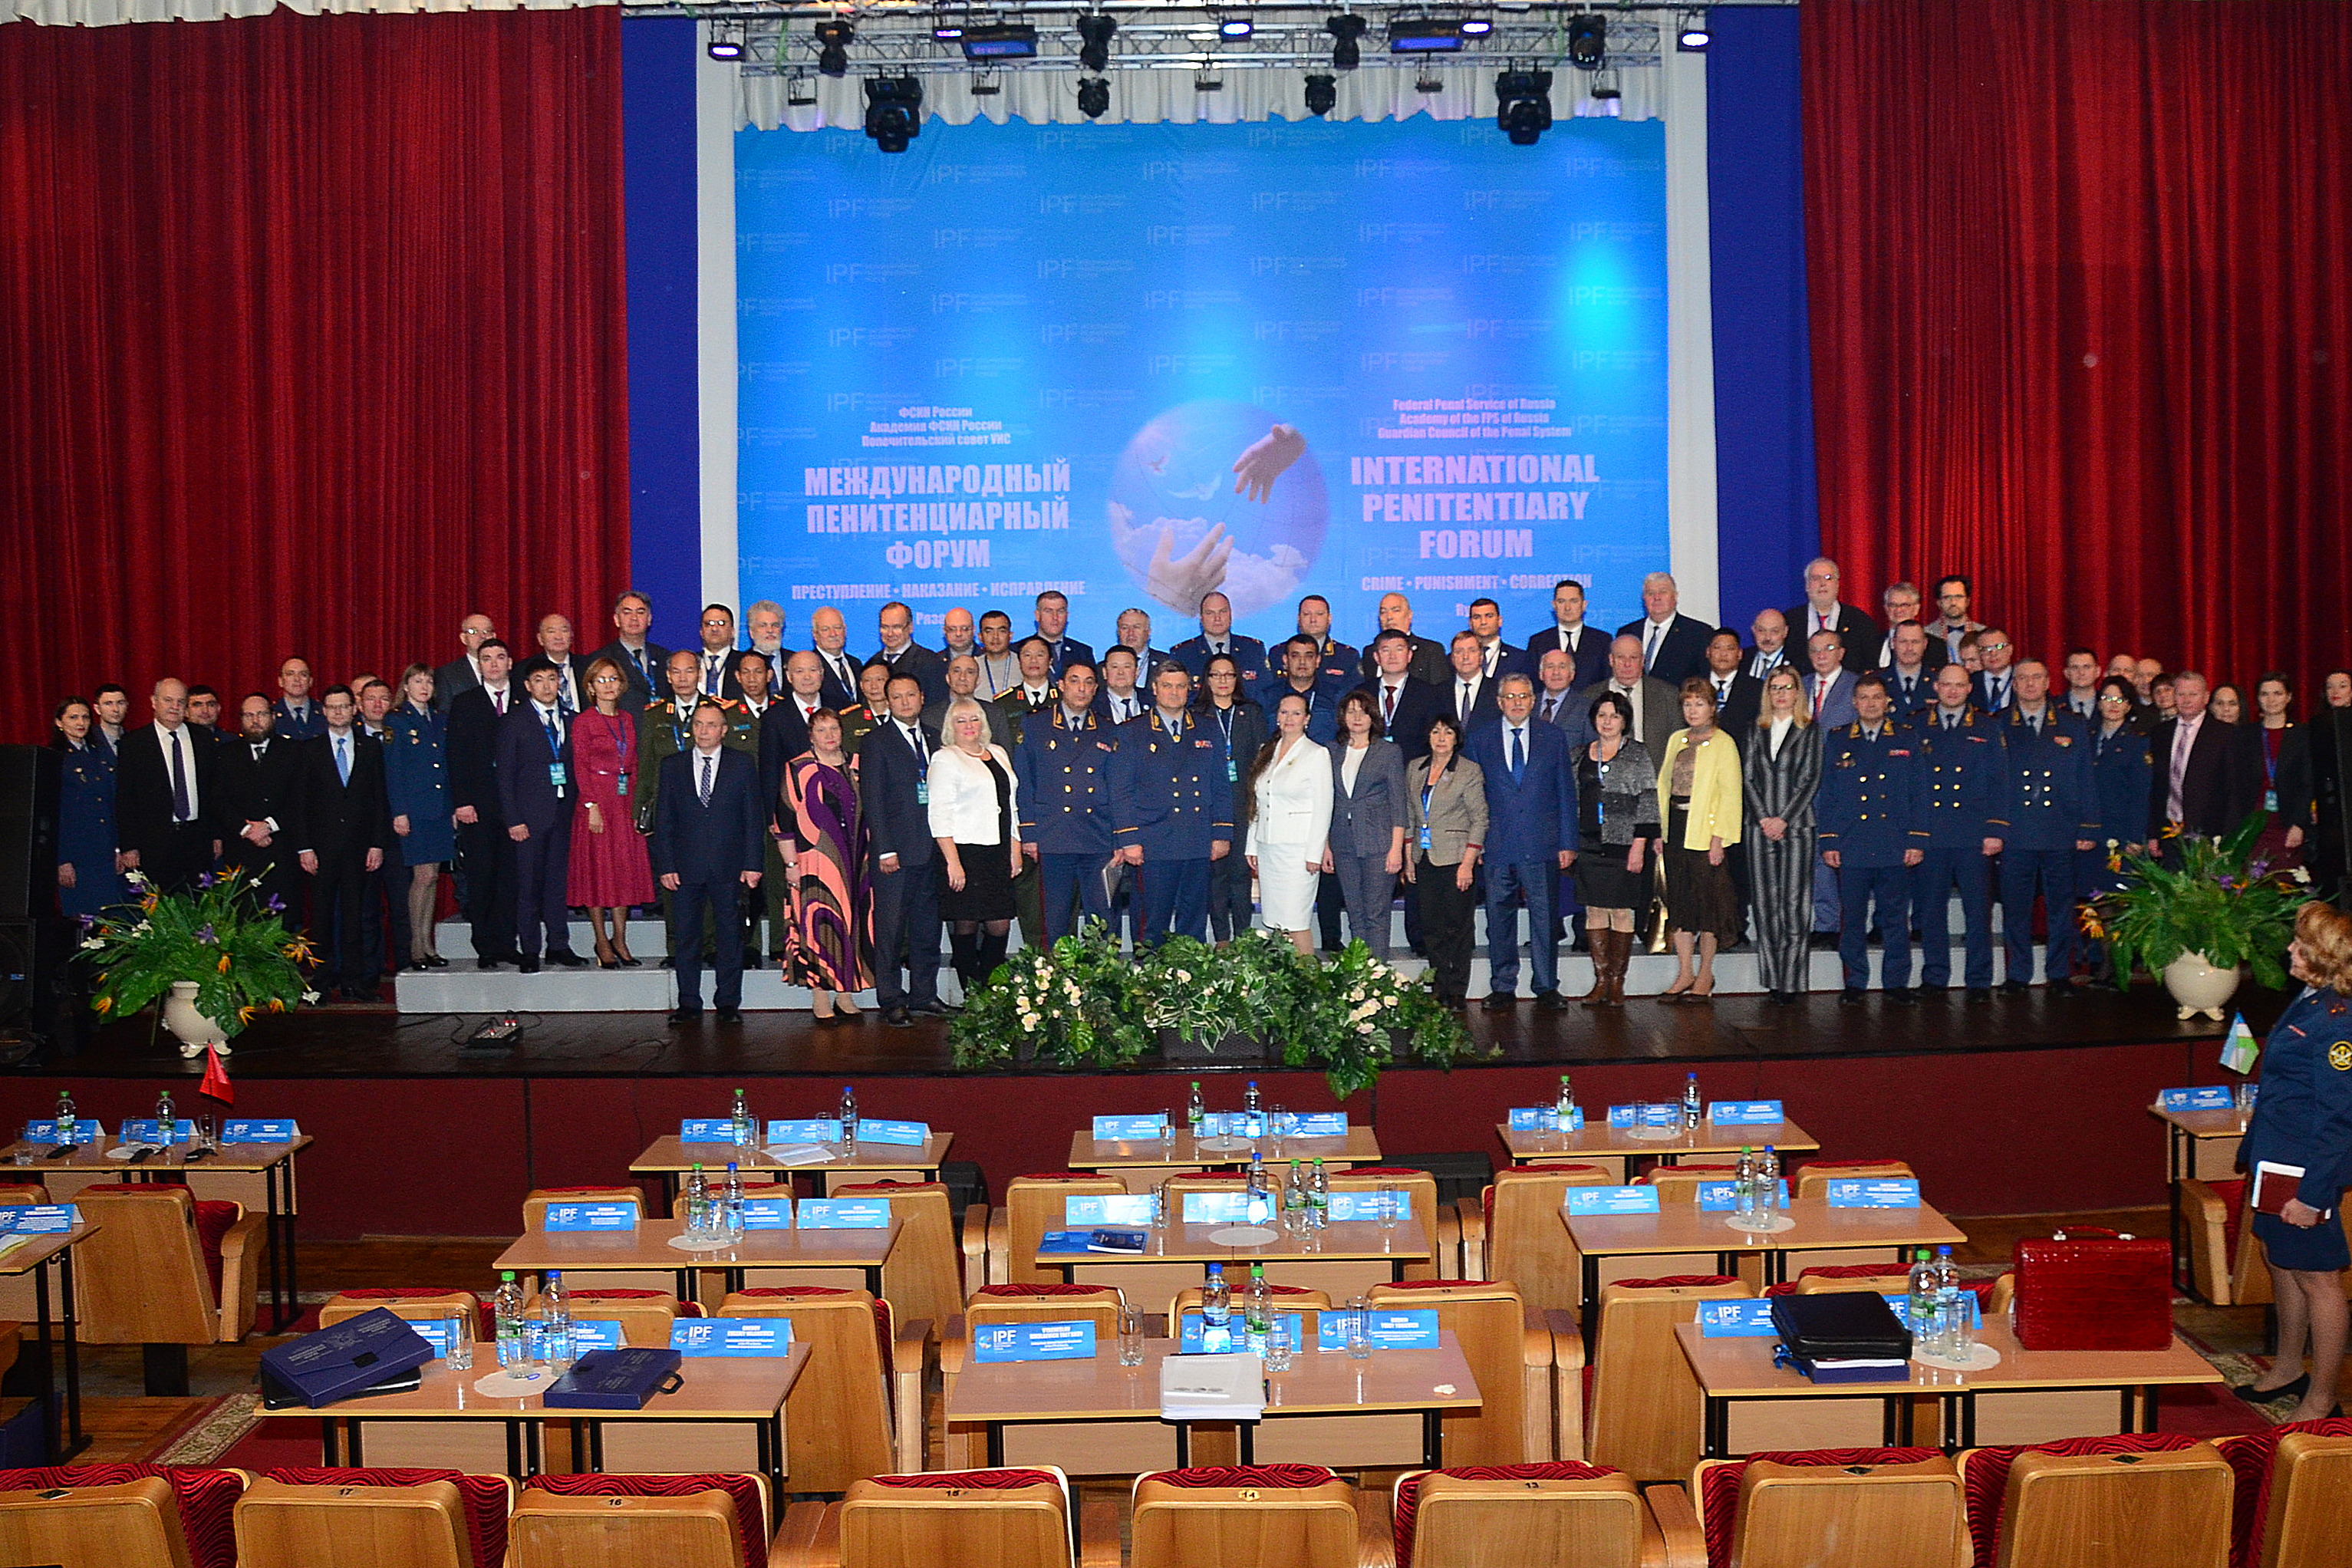 Фото общее участников пленарного заседания Форума 21.11.2019